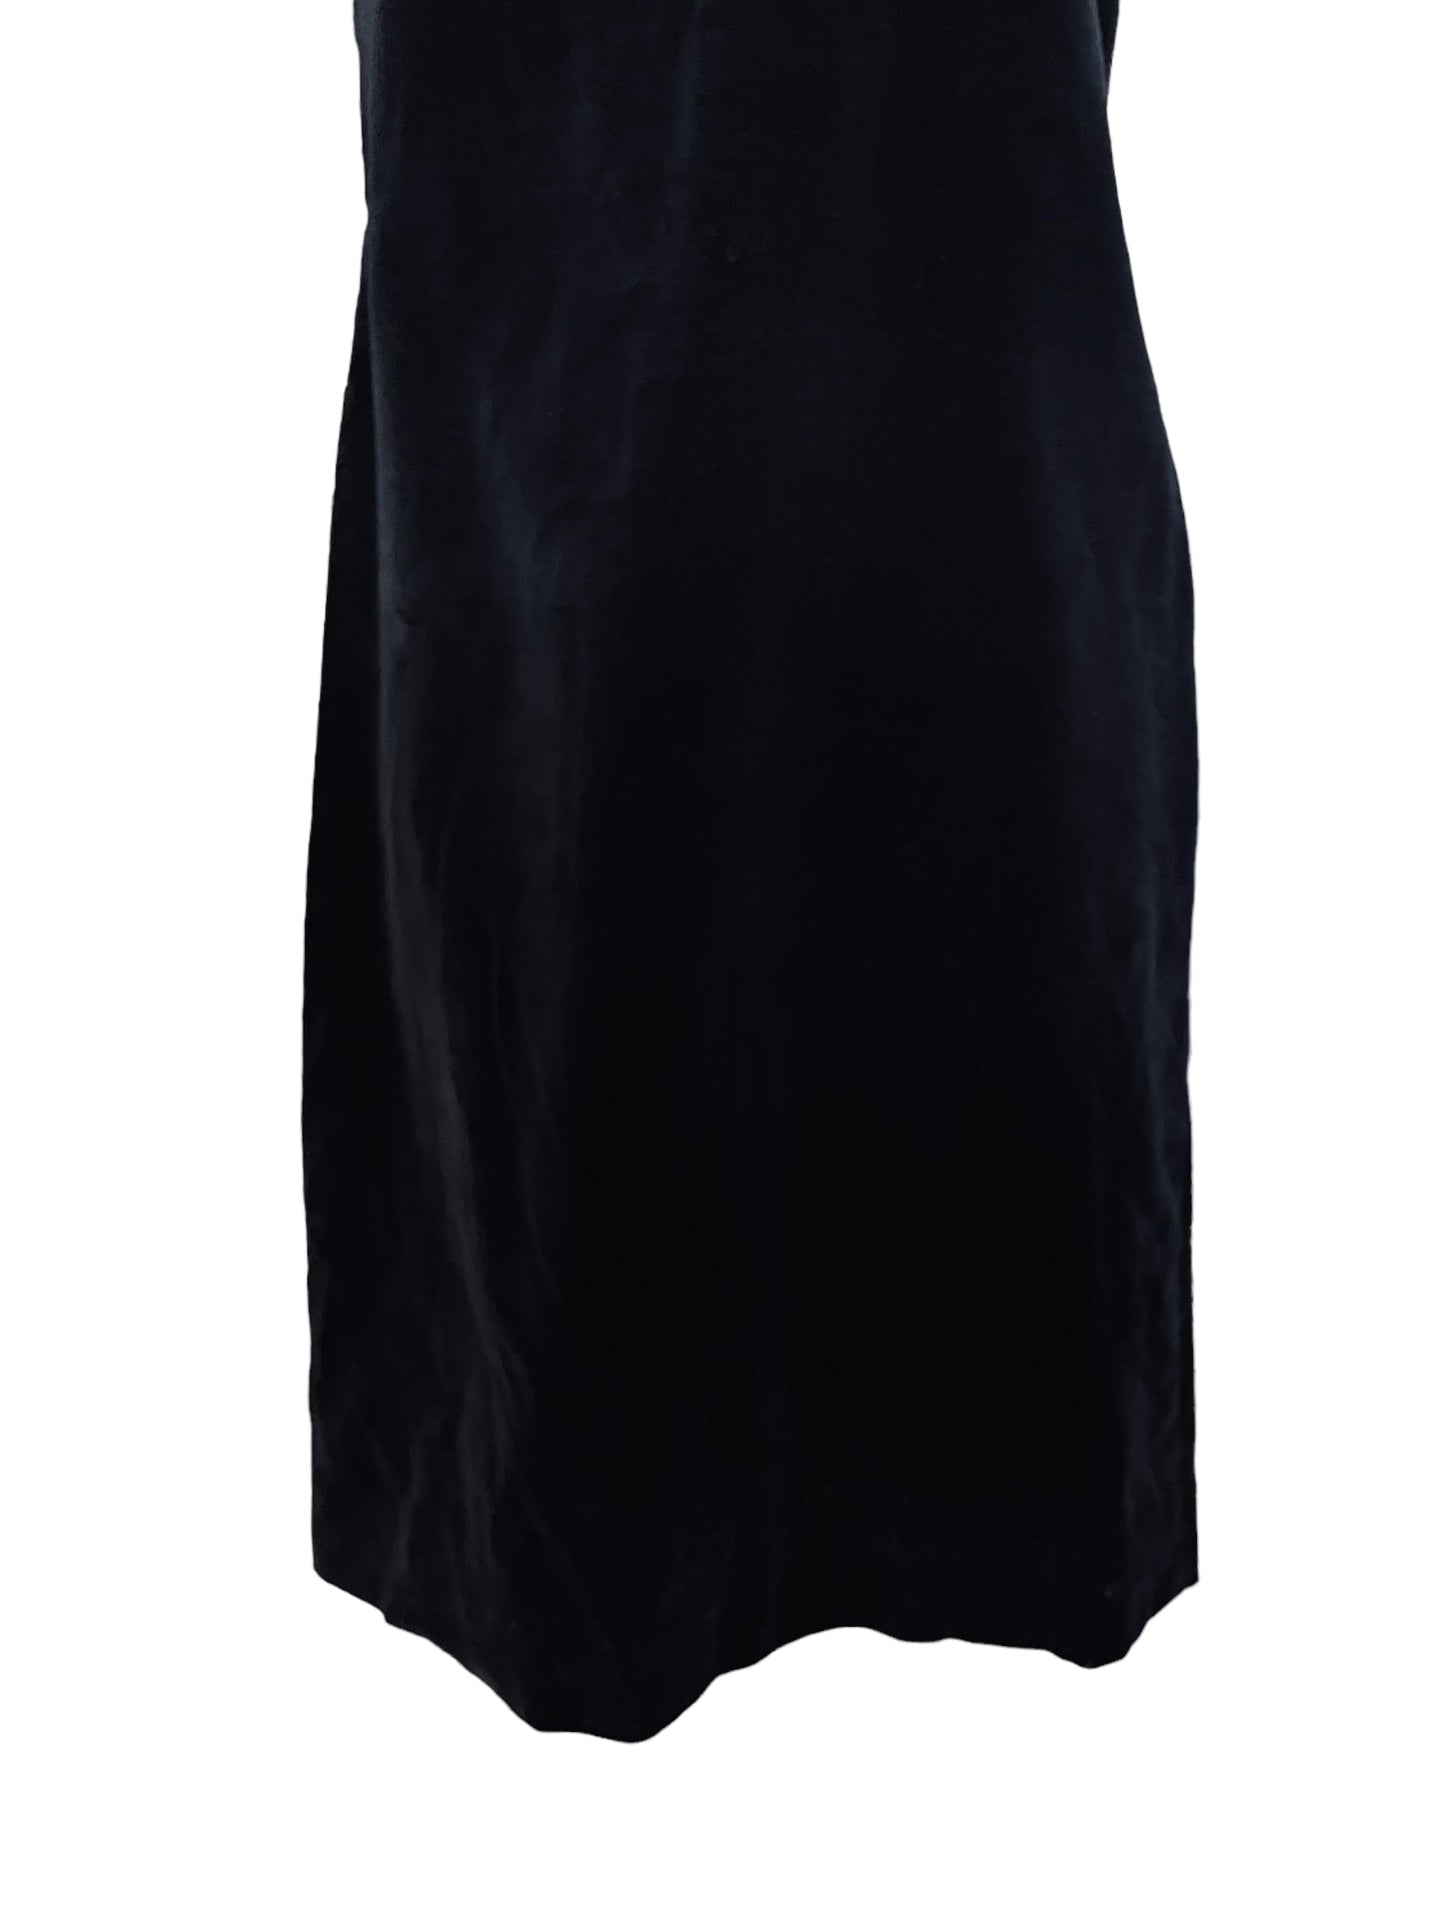 Vintage 1950s Donnkenney Black Velvet Dress|  Barn Owl Vintage | Seattle Vintage Dresses